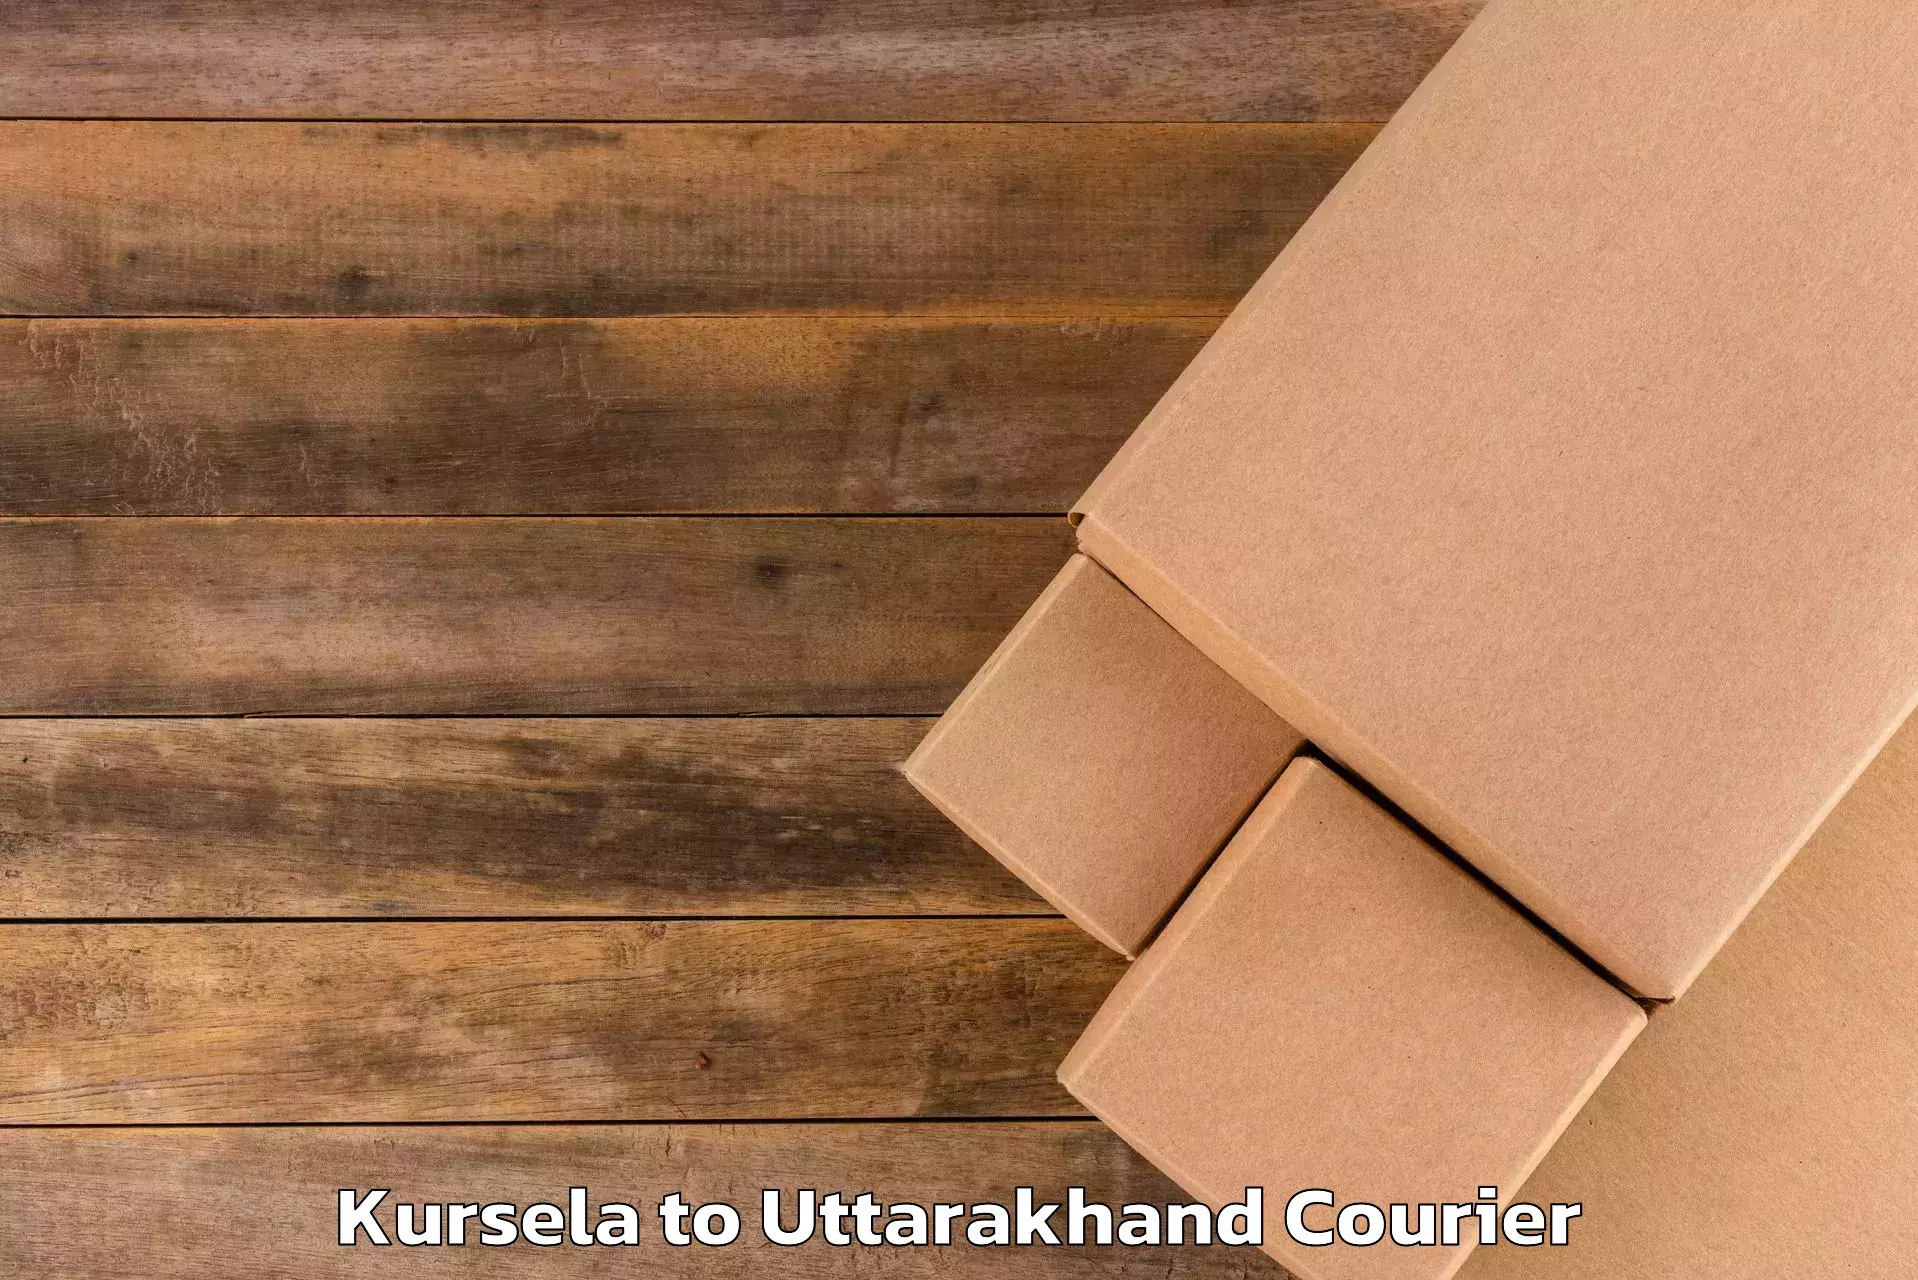 Luggage forwarding service Kursela to Uttarakhand